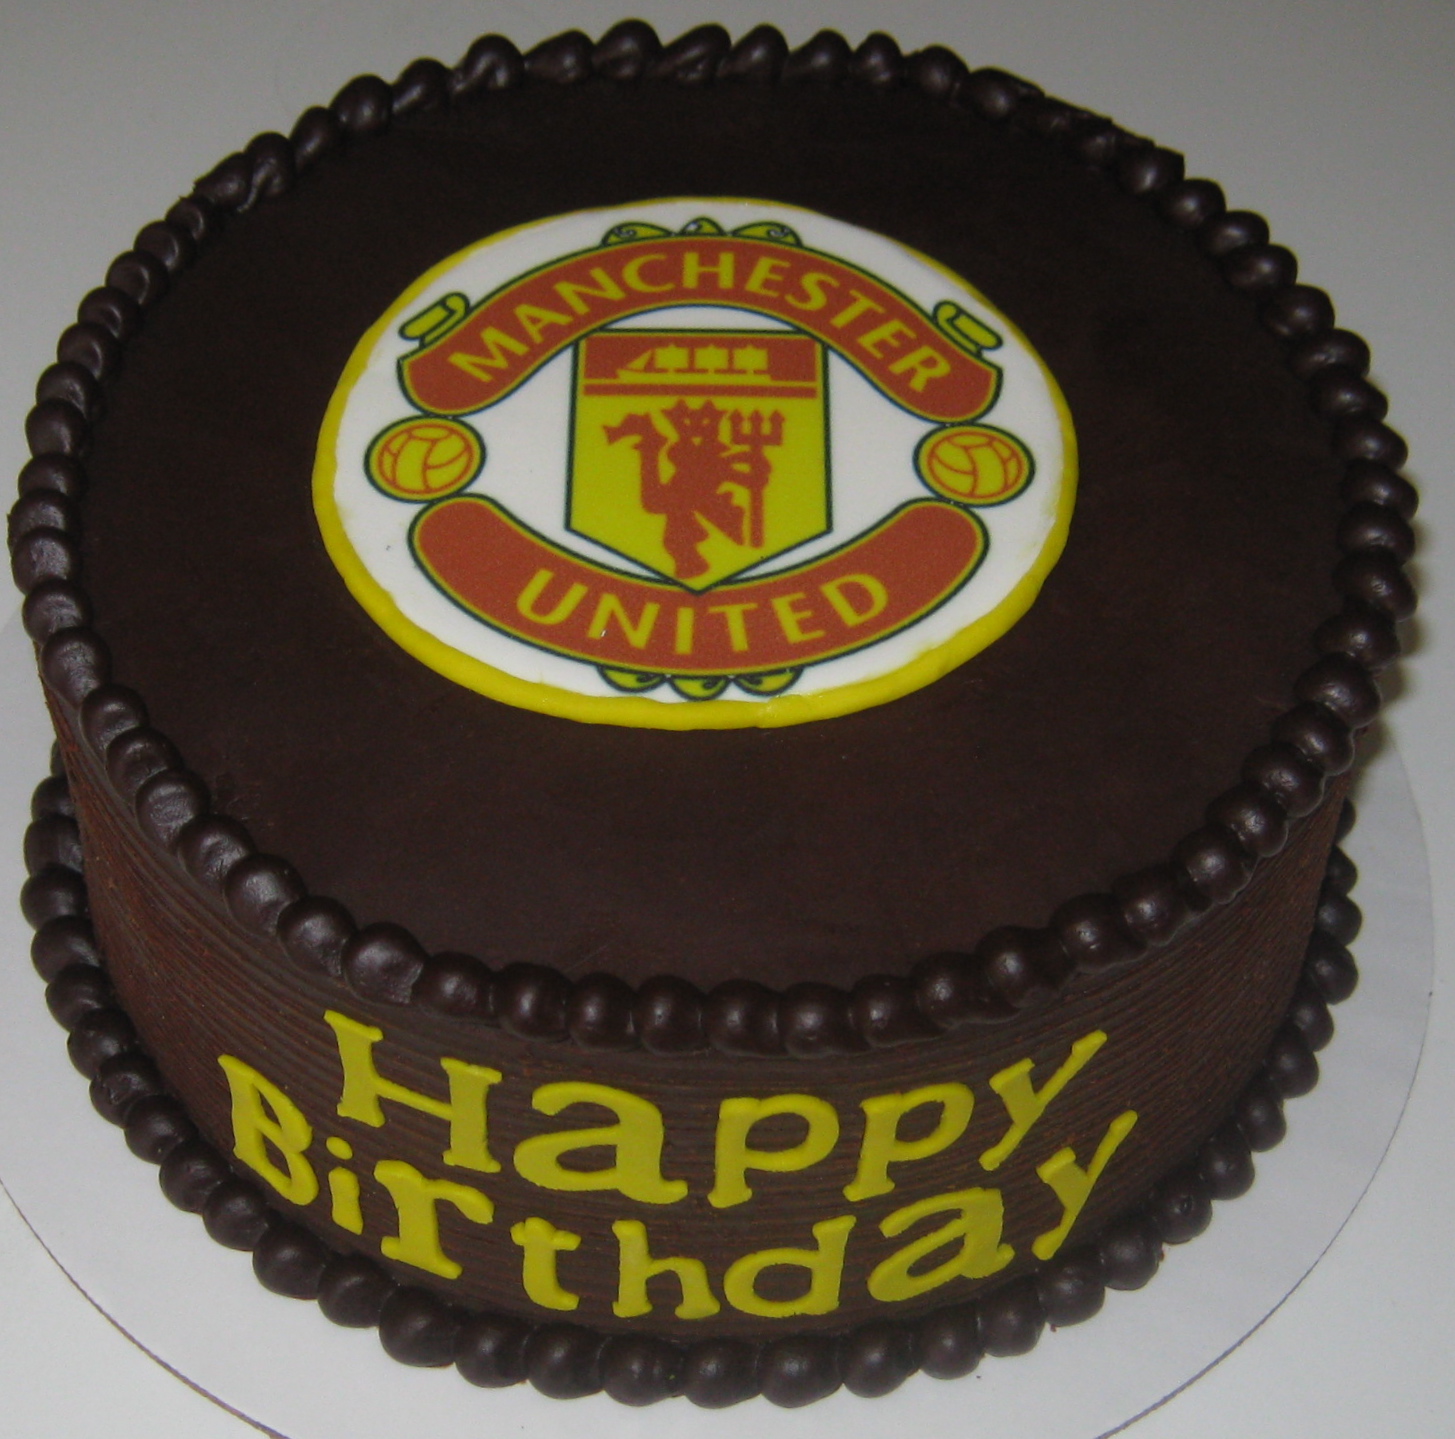 Sweet T S Cake Design Manchester United Soccer Team